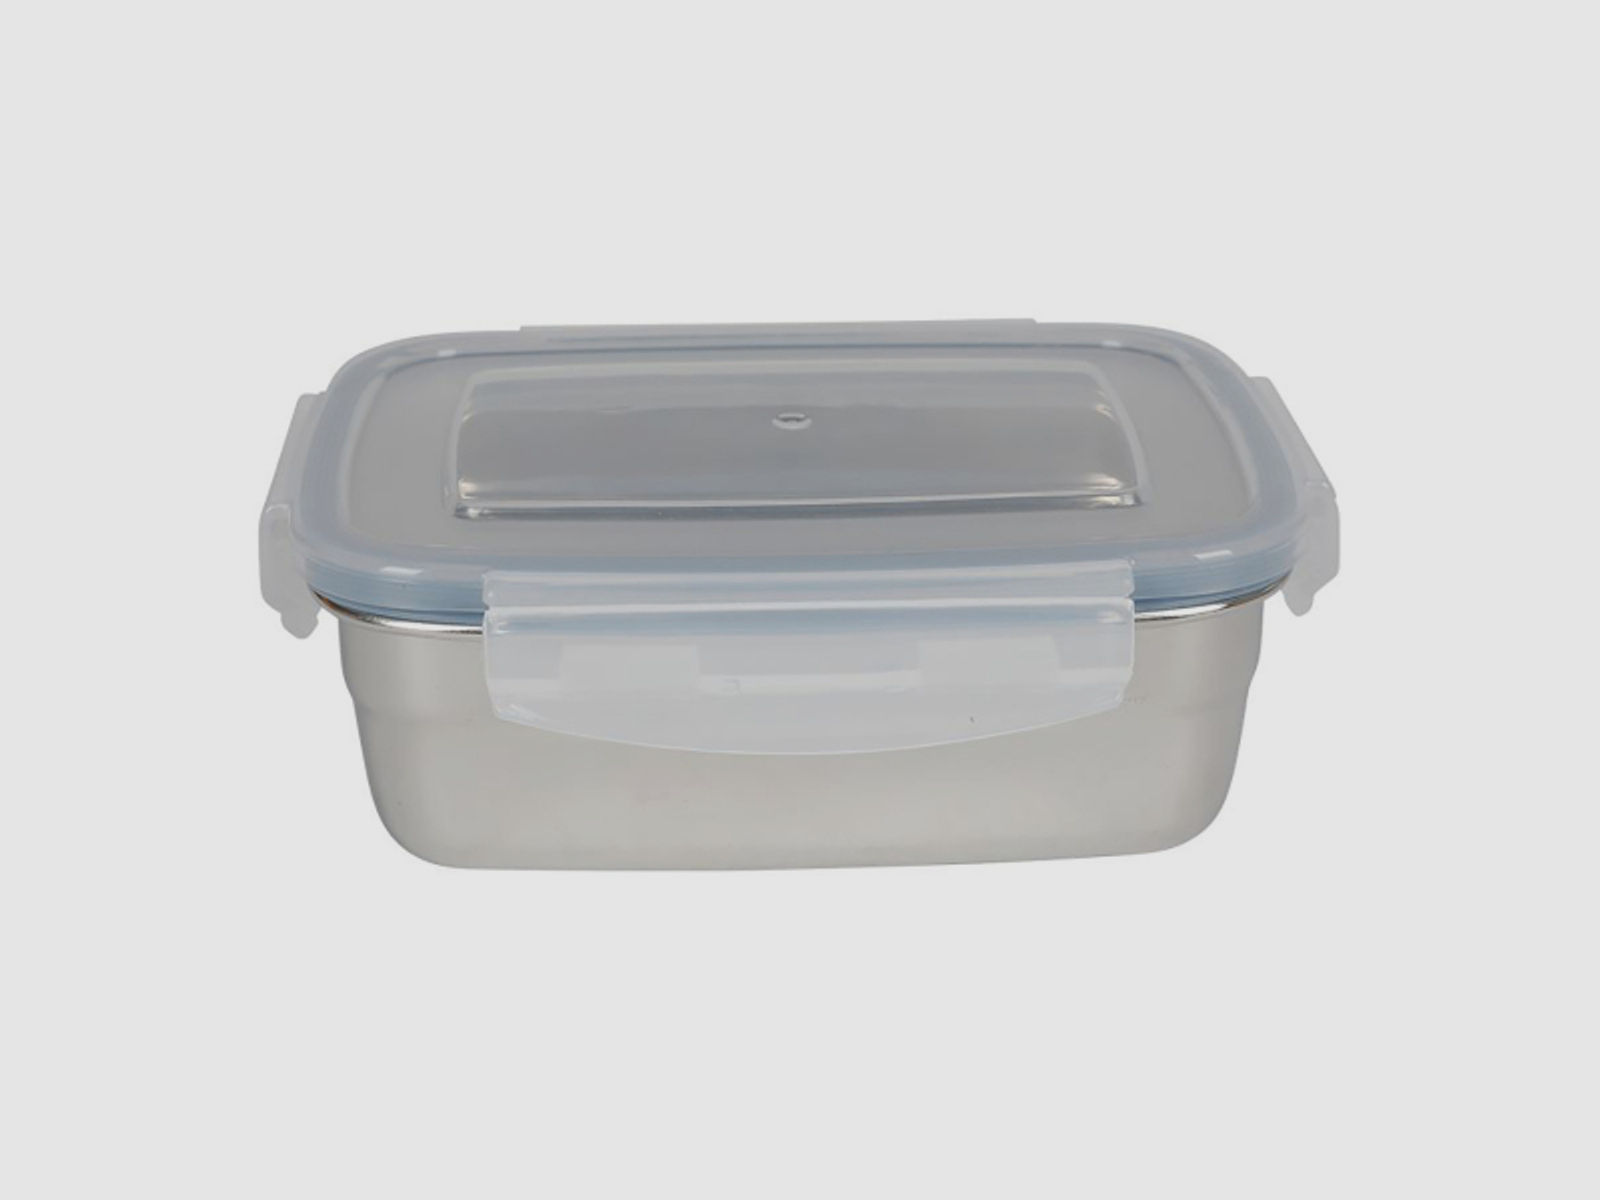 Brotbüchse / Köderdose mit Clipverschlussdeckel- 1800ml - 21,8 x 15,9 x 8,5cm - Edelstahl - Lunchbox